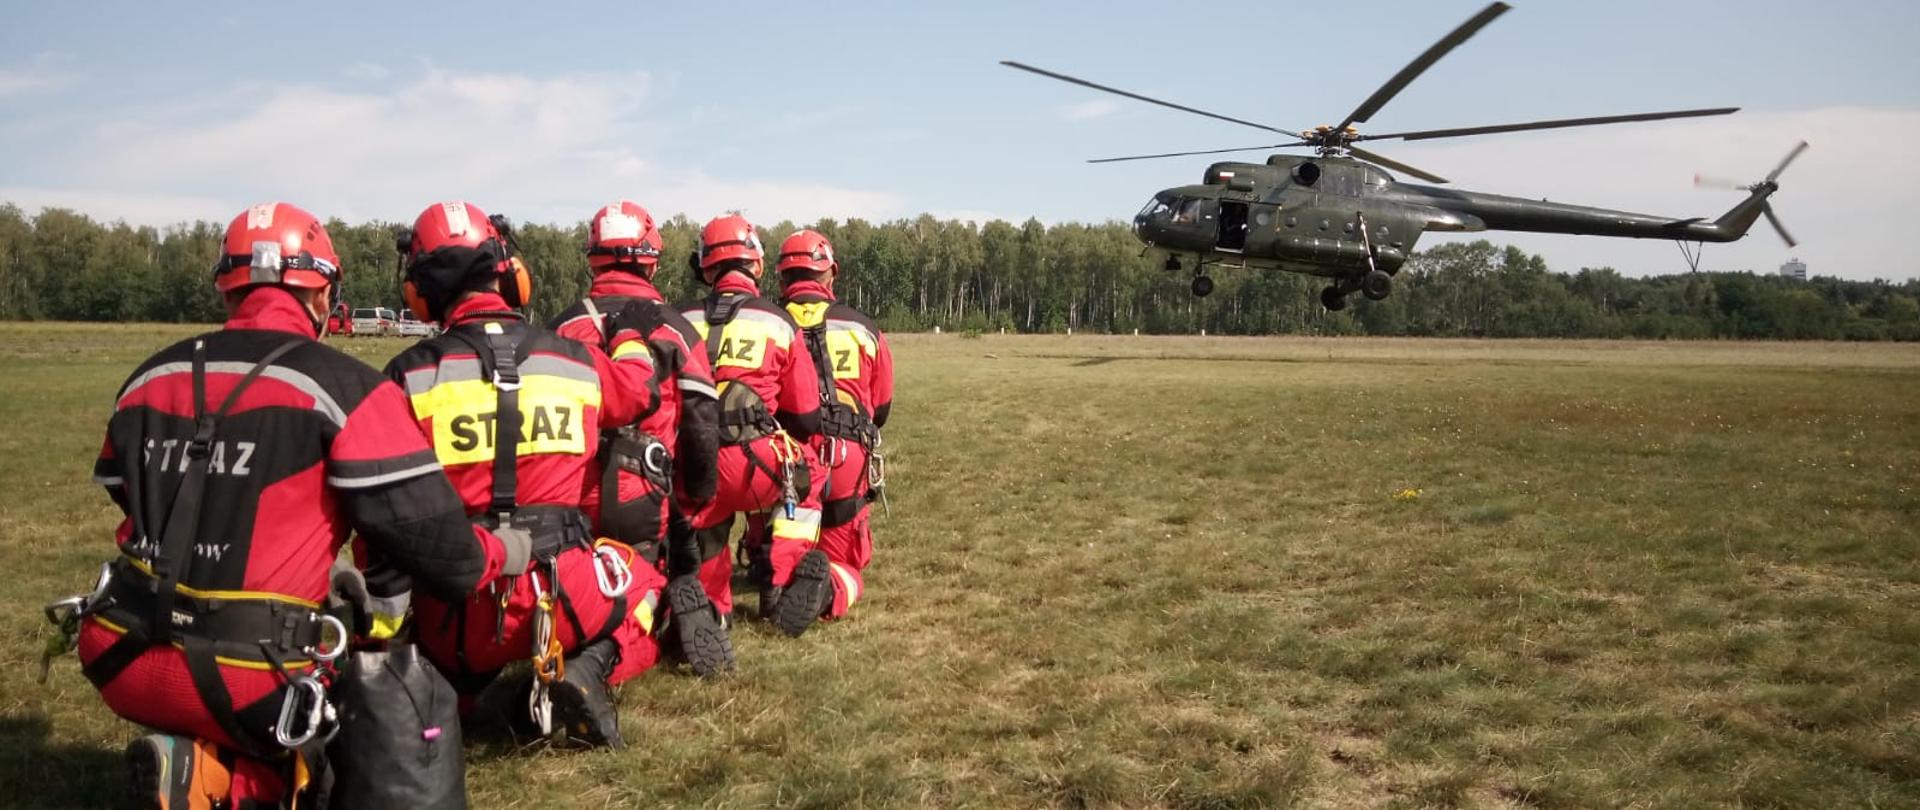 5 strażaków w czerwonych kombinezonach w pozycji klęczącej na jednym kolanie na trawie oczekuje na lądowanie policyjnego śmigłowca